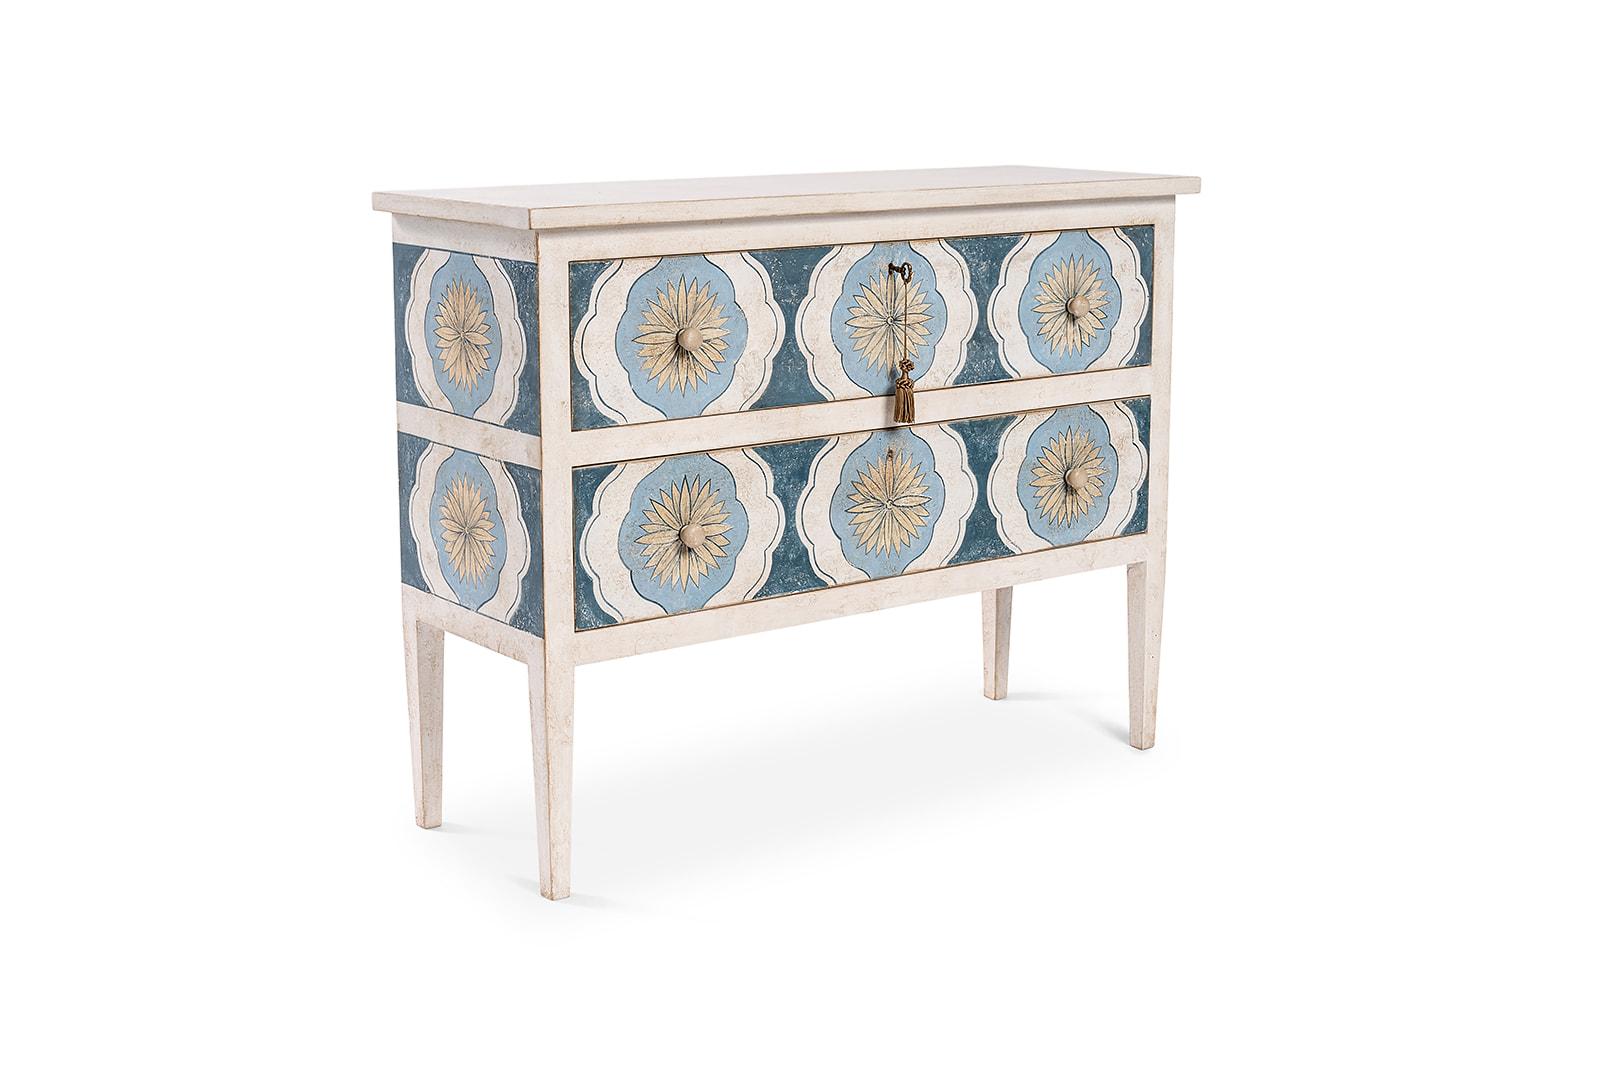 Aus unserer Hand-Painted Furniture Collection freuen wir uns, Ihnen unsere Deep Sea Blue Barberini Kommode mit Schubladen vorzustellen.
Diese Version unserer Kommode Barberini in Deep Sea Blue mit unserem Sonnenblumen-Dekor in bezaubernden Weiß- und